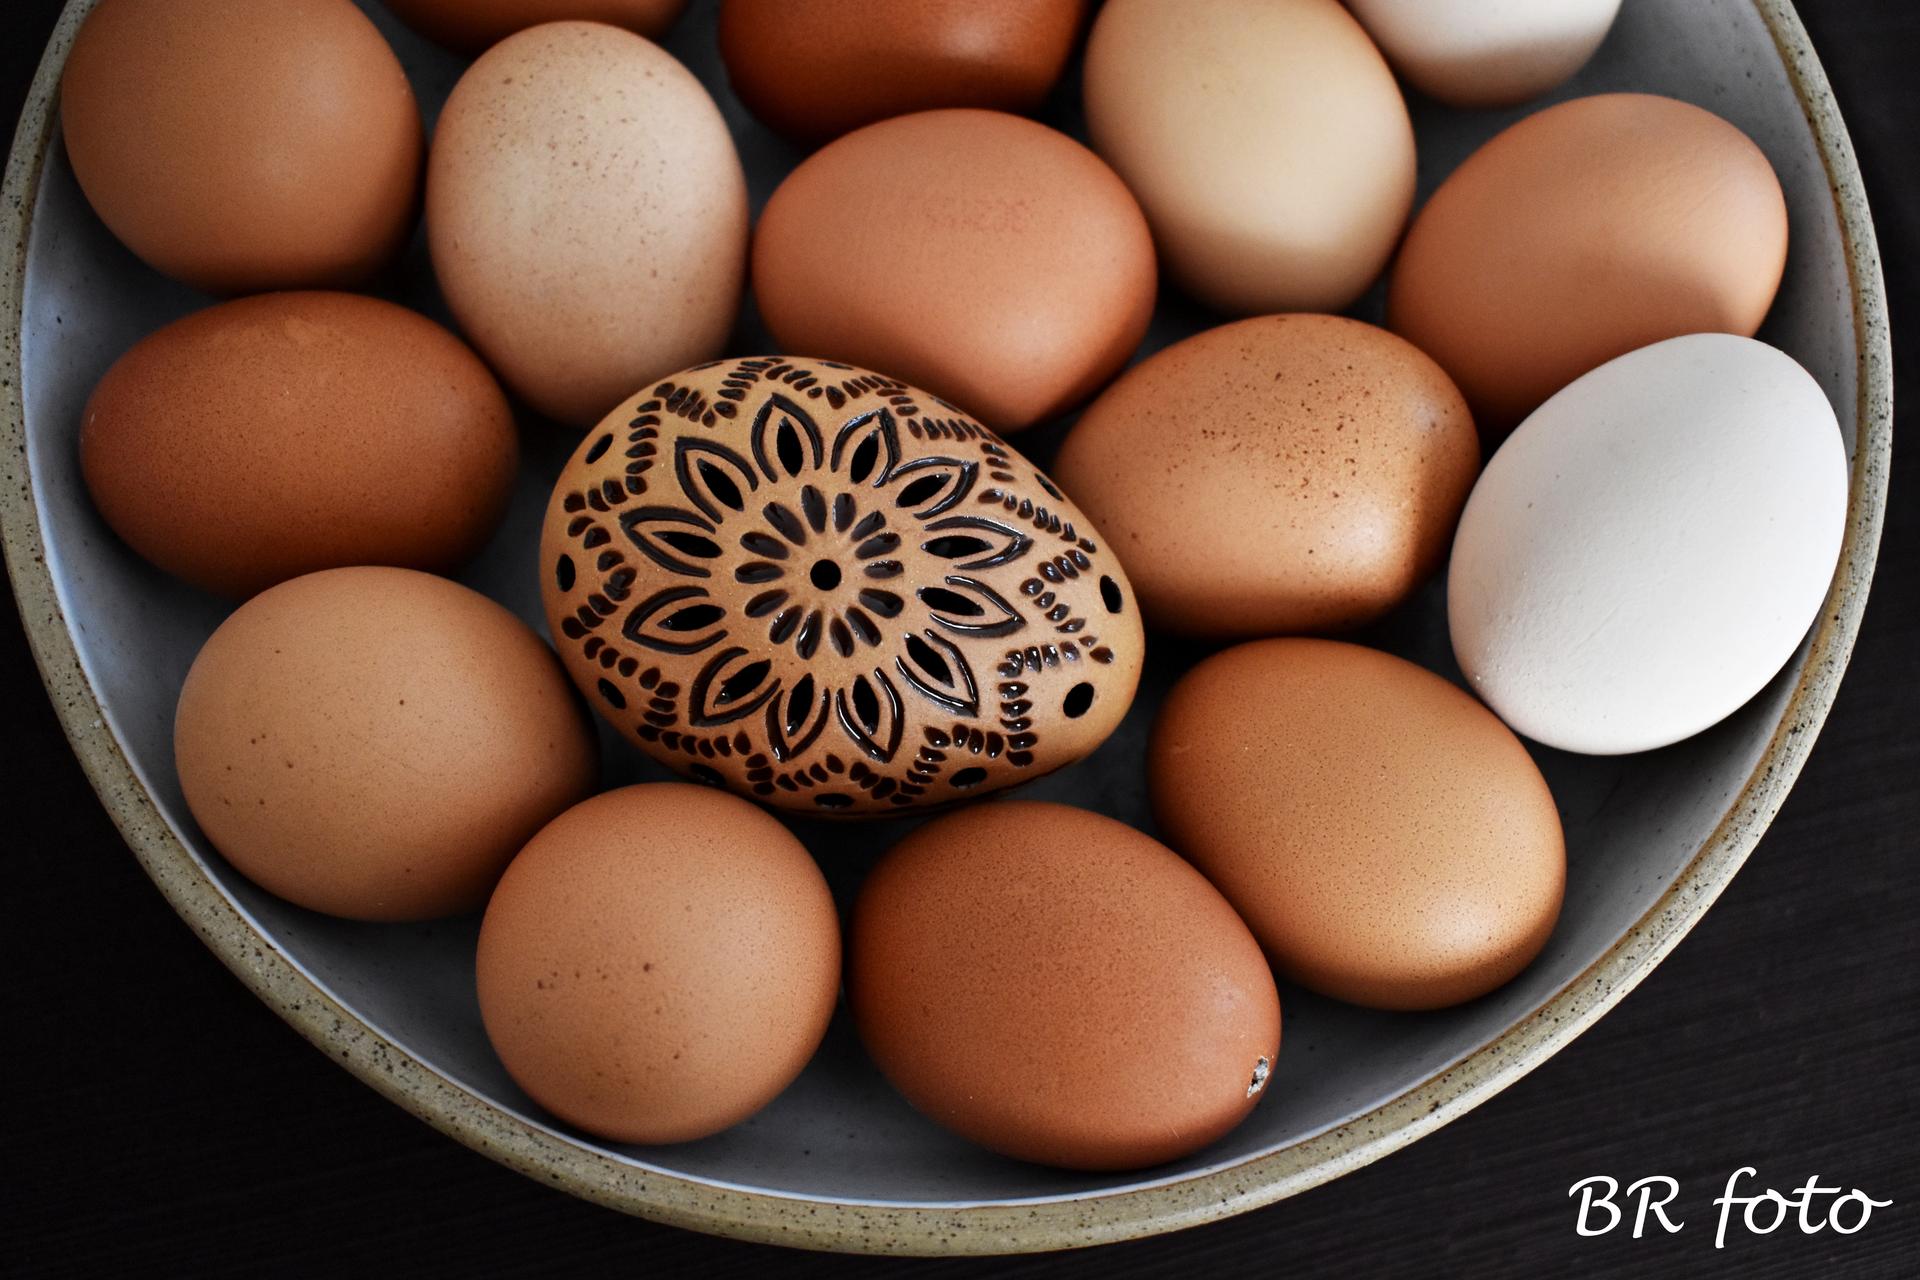 Jarní svátky 2 - keramické vejce obklopují vyfouklá vajíčka